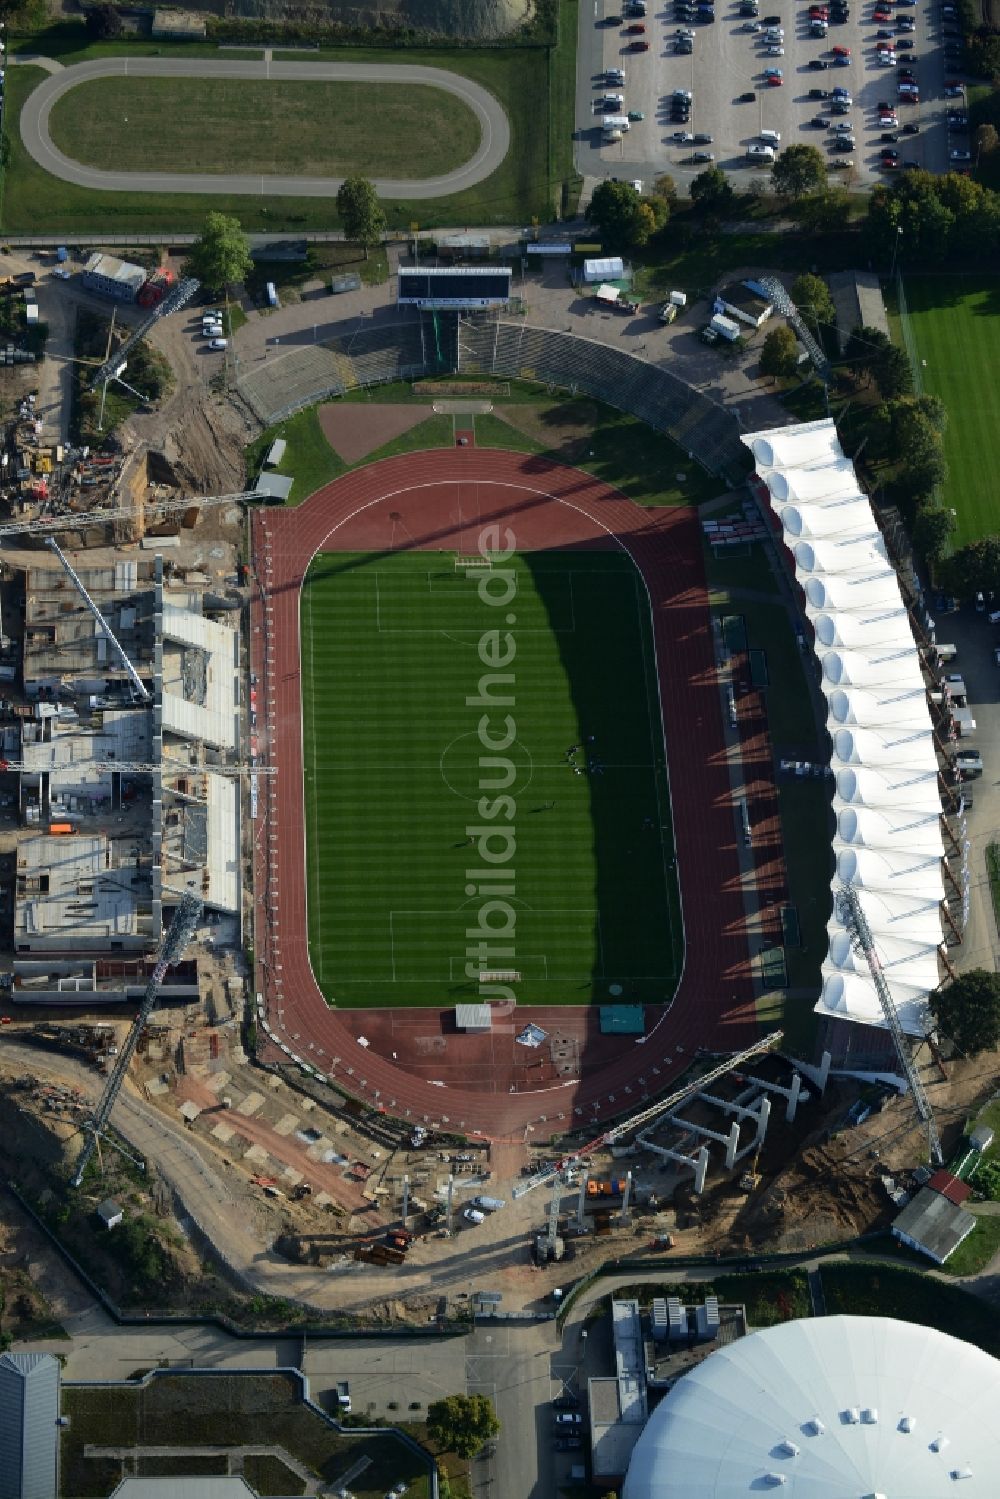 Erfurt von oben - Baustelle zum Umbau der Arena des Stadion Steigerwaldstadion in Erfurt im Bundesland Thüringen